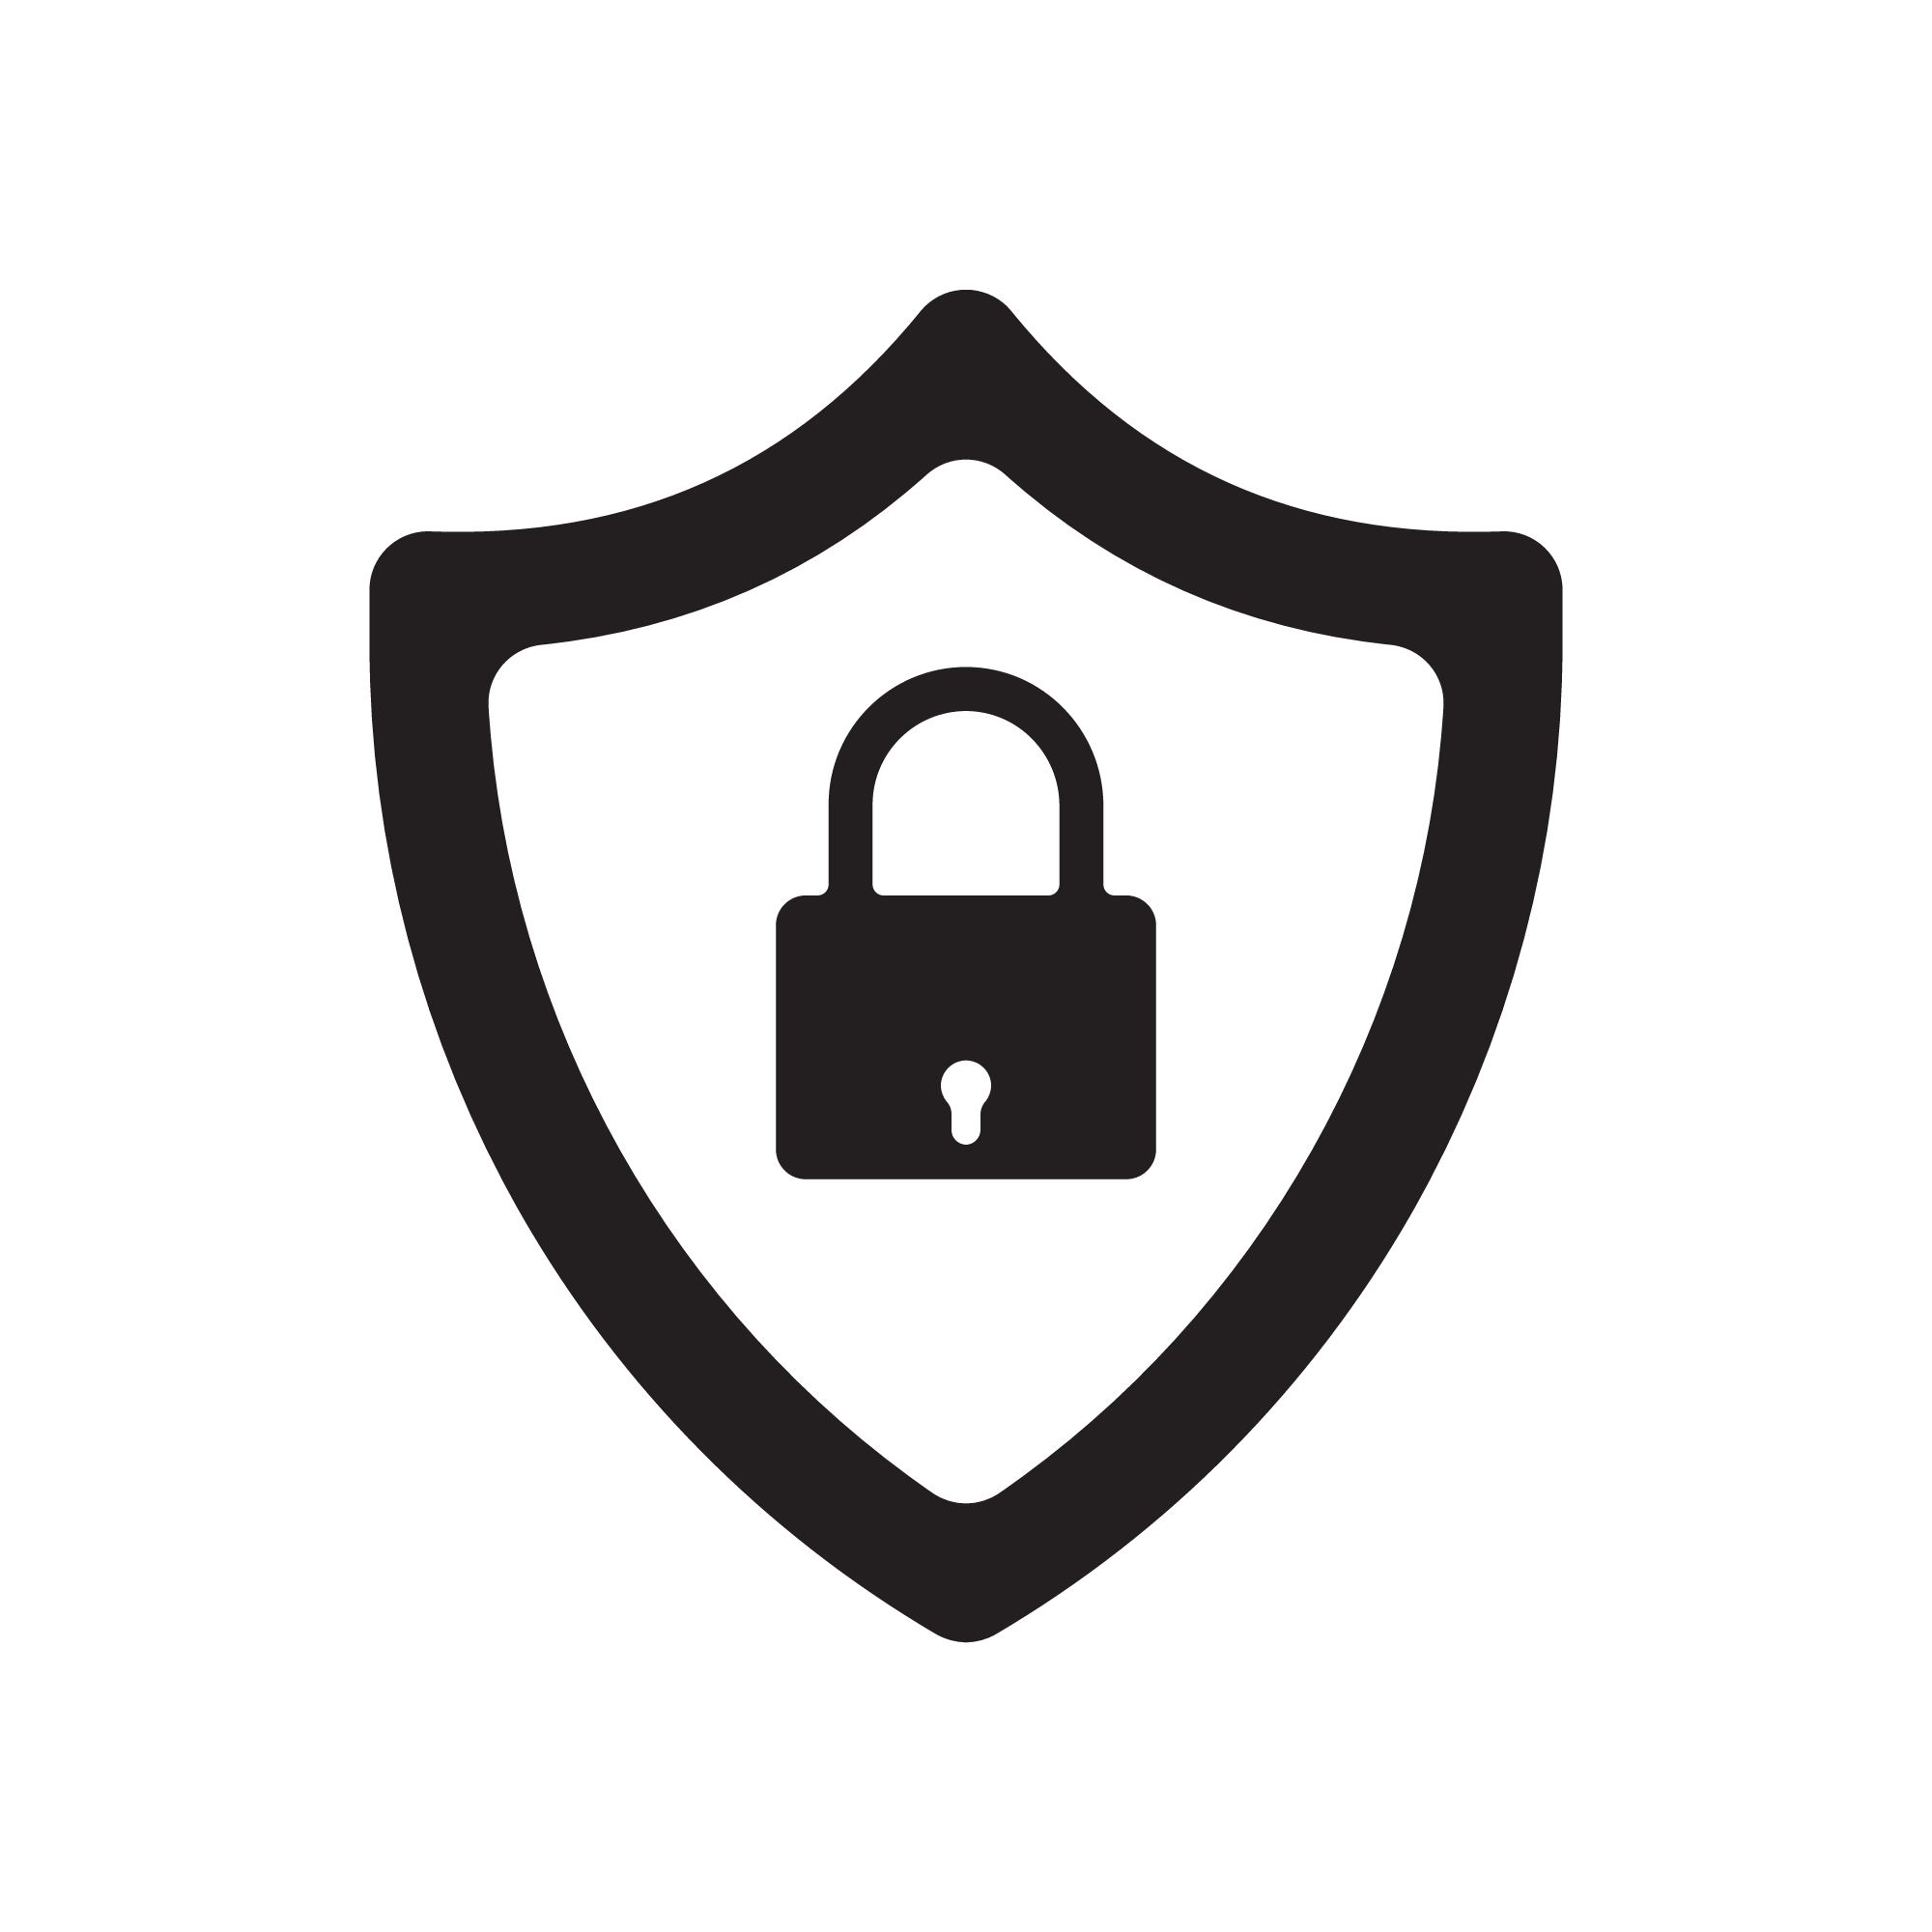 Slika prikazuje internetsku ikonu s lokotom za sigurnost